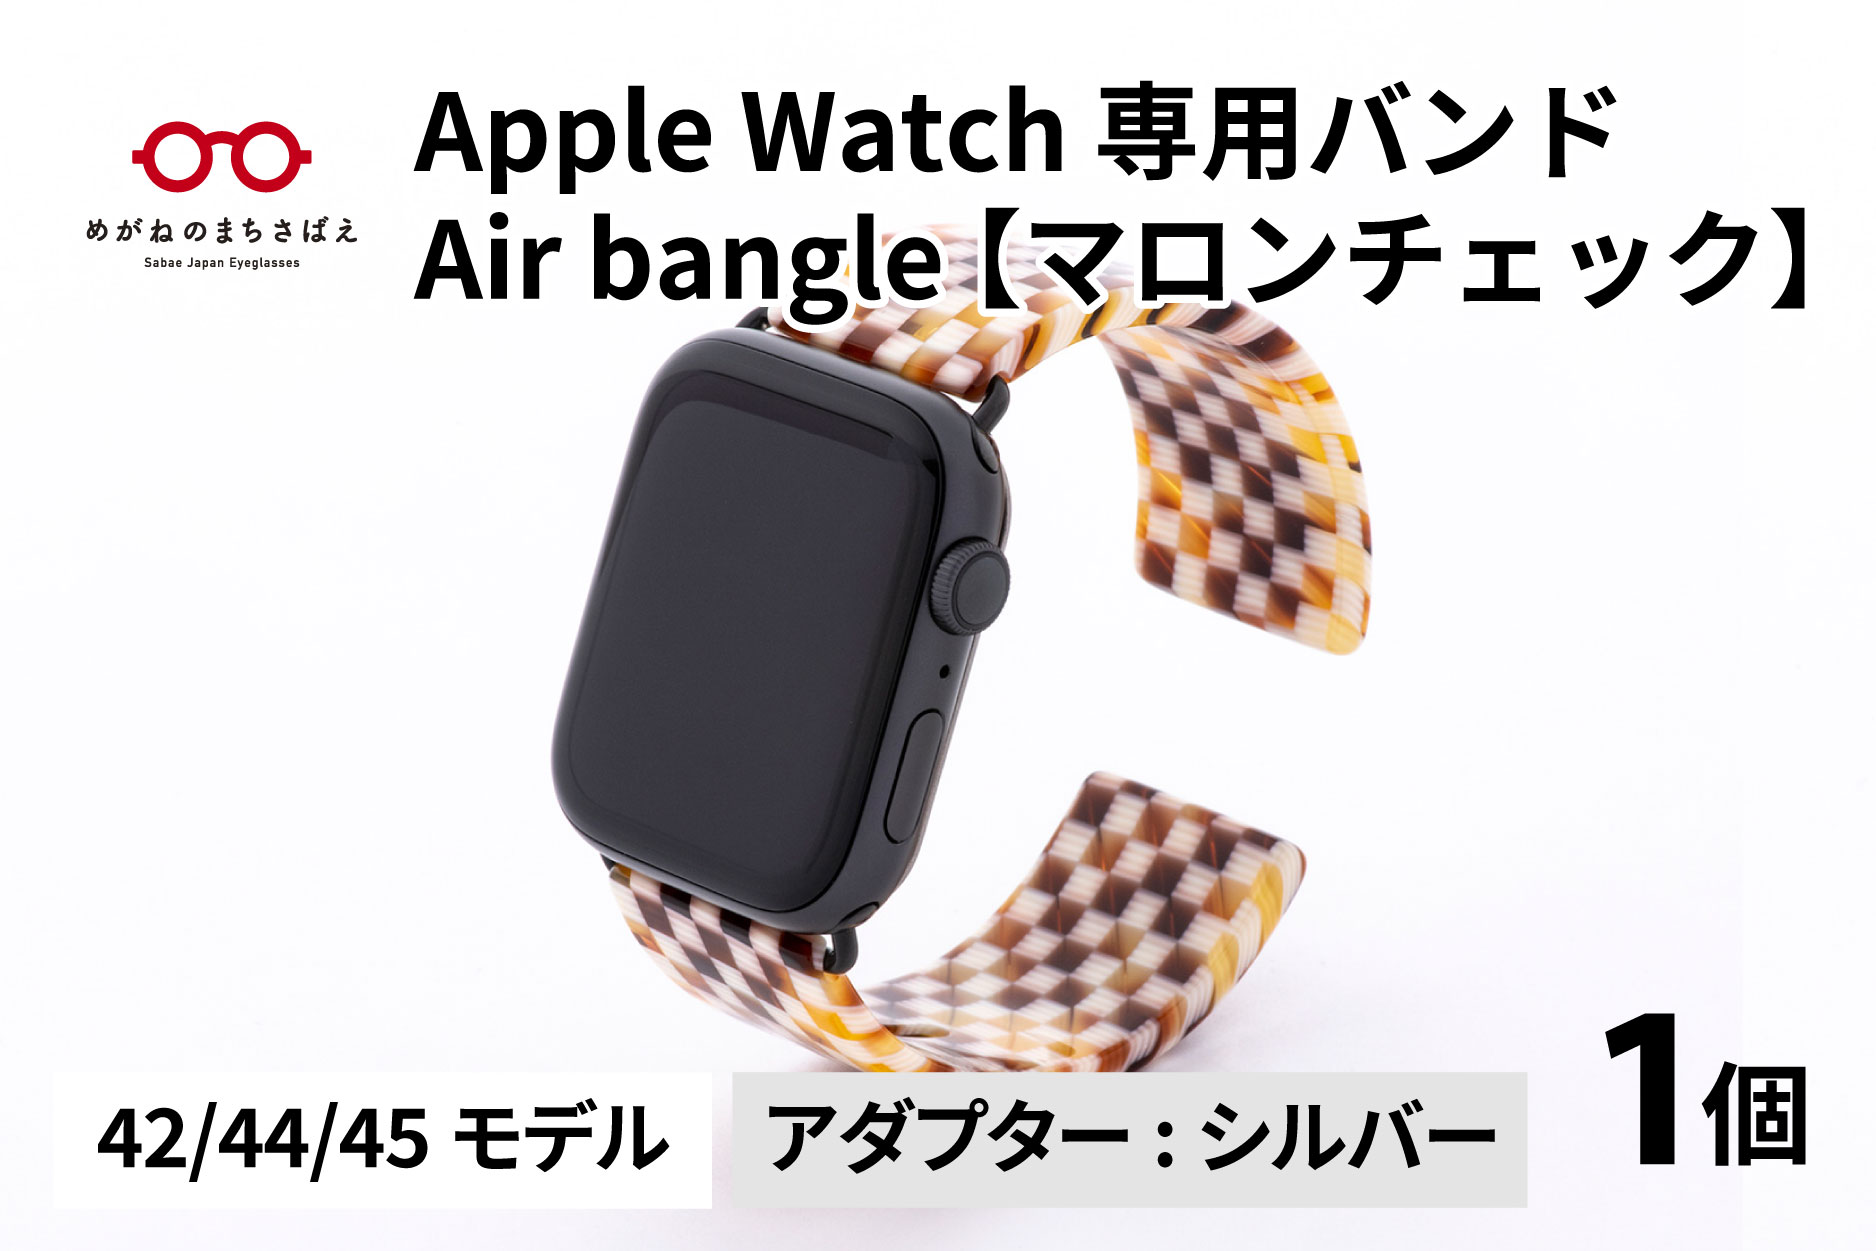 Apple Watch 専用バンド 「Air bangle」 マロンチェック（42 / 44 / 45モデル）アダプタ シルバー